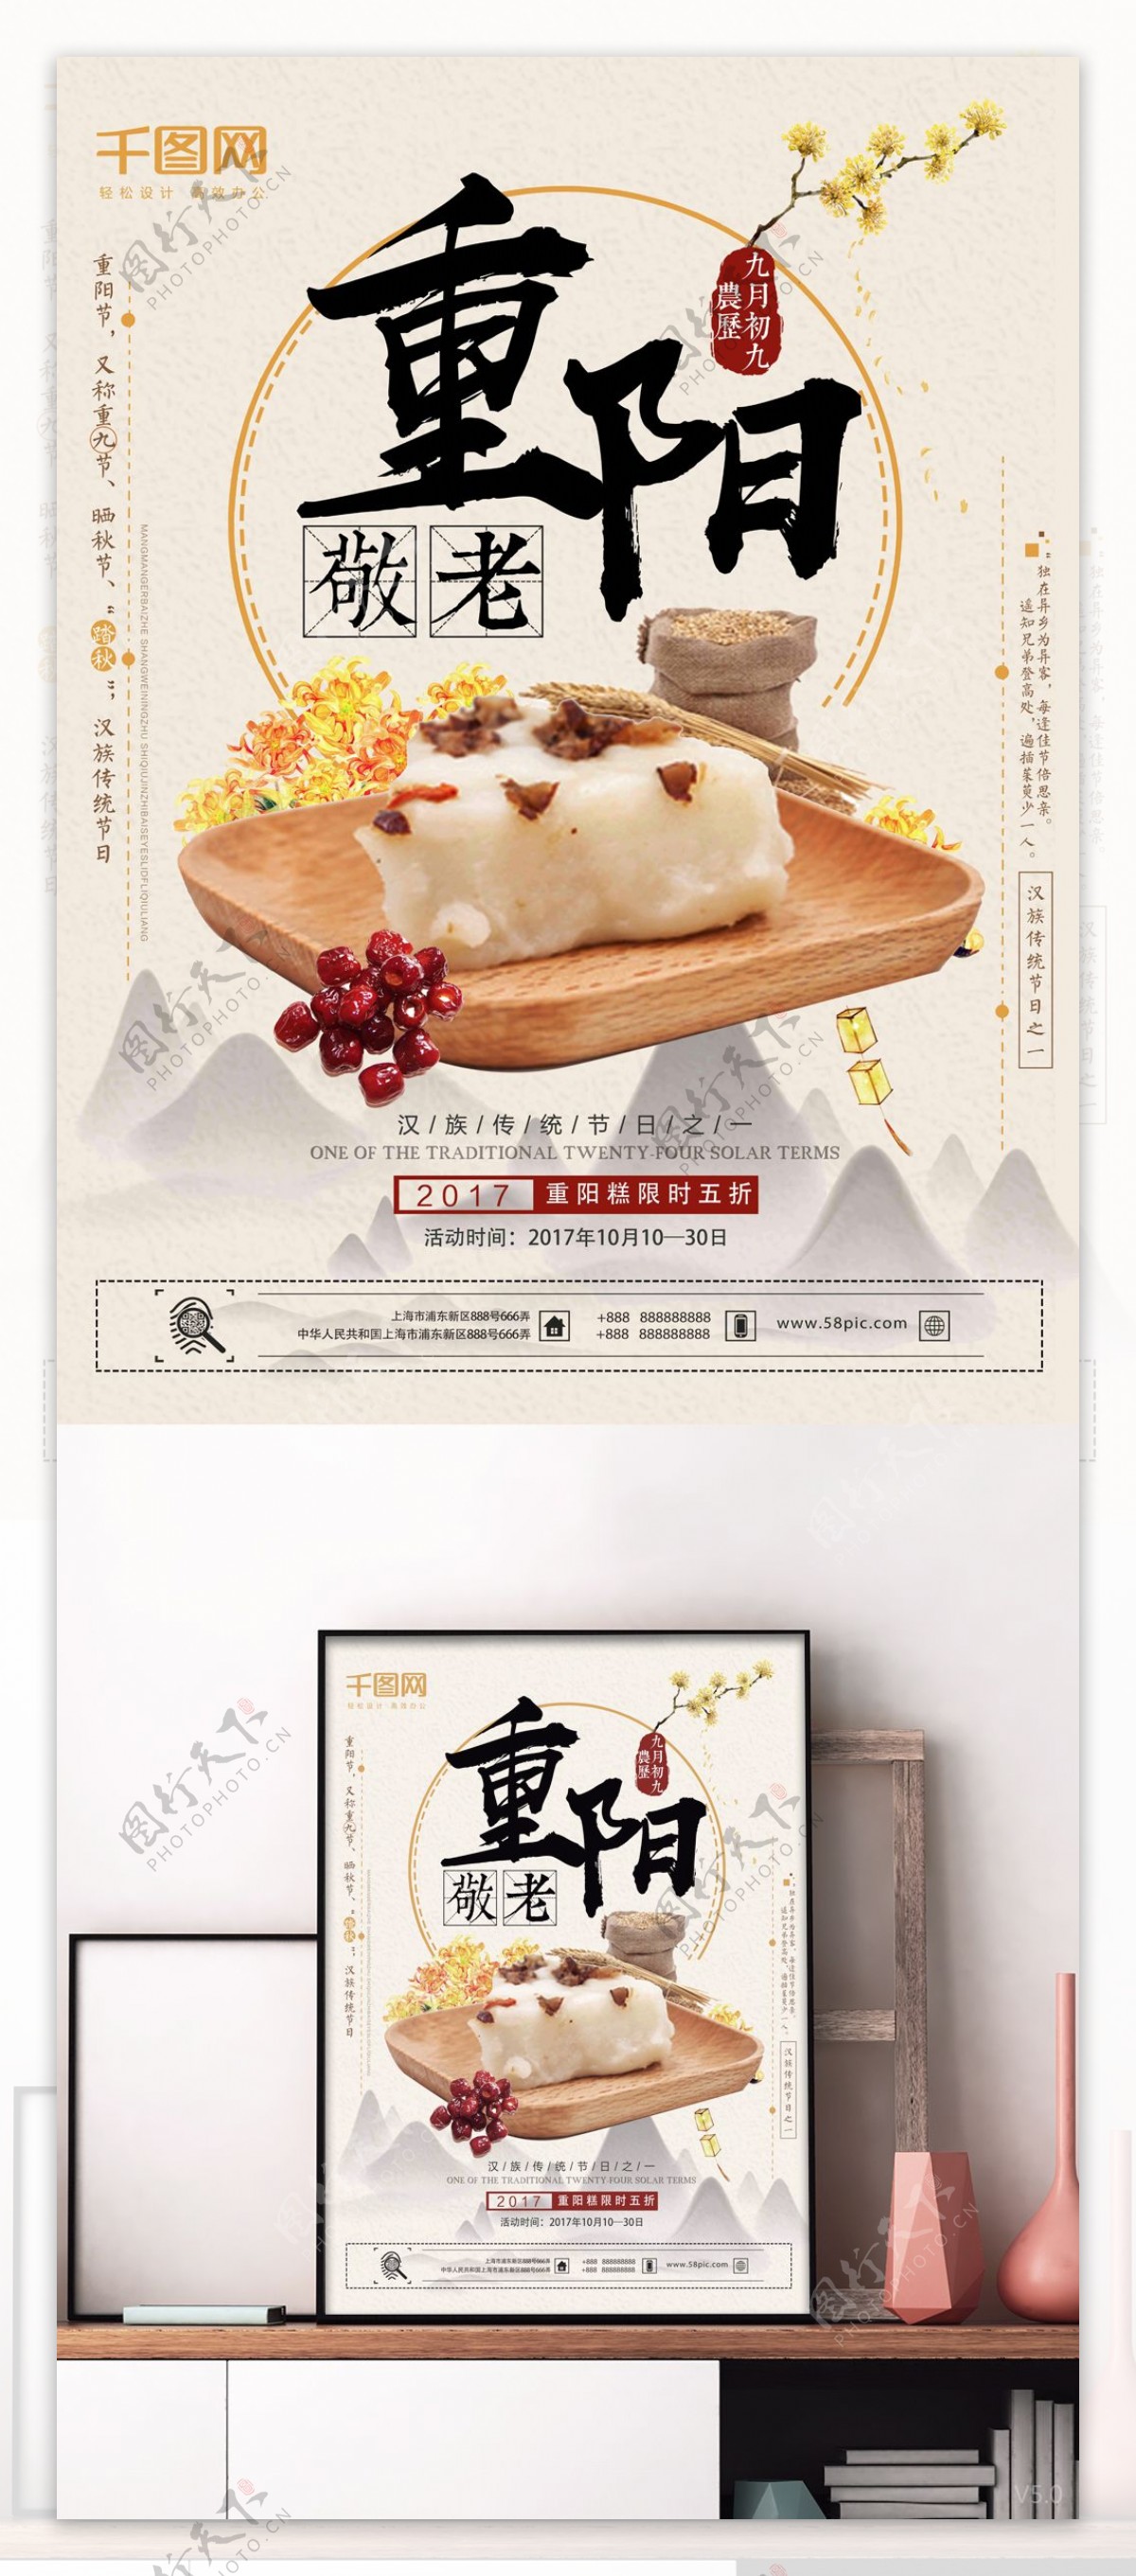 清新淡雅重阳敬老节重阳糕店新品上市促销美食海报